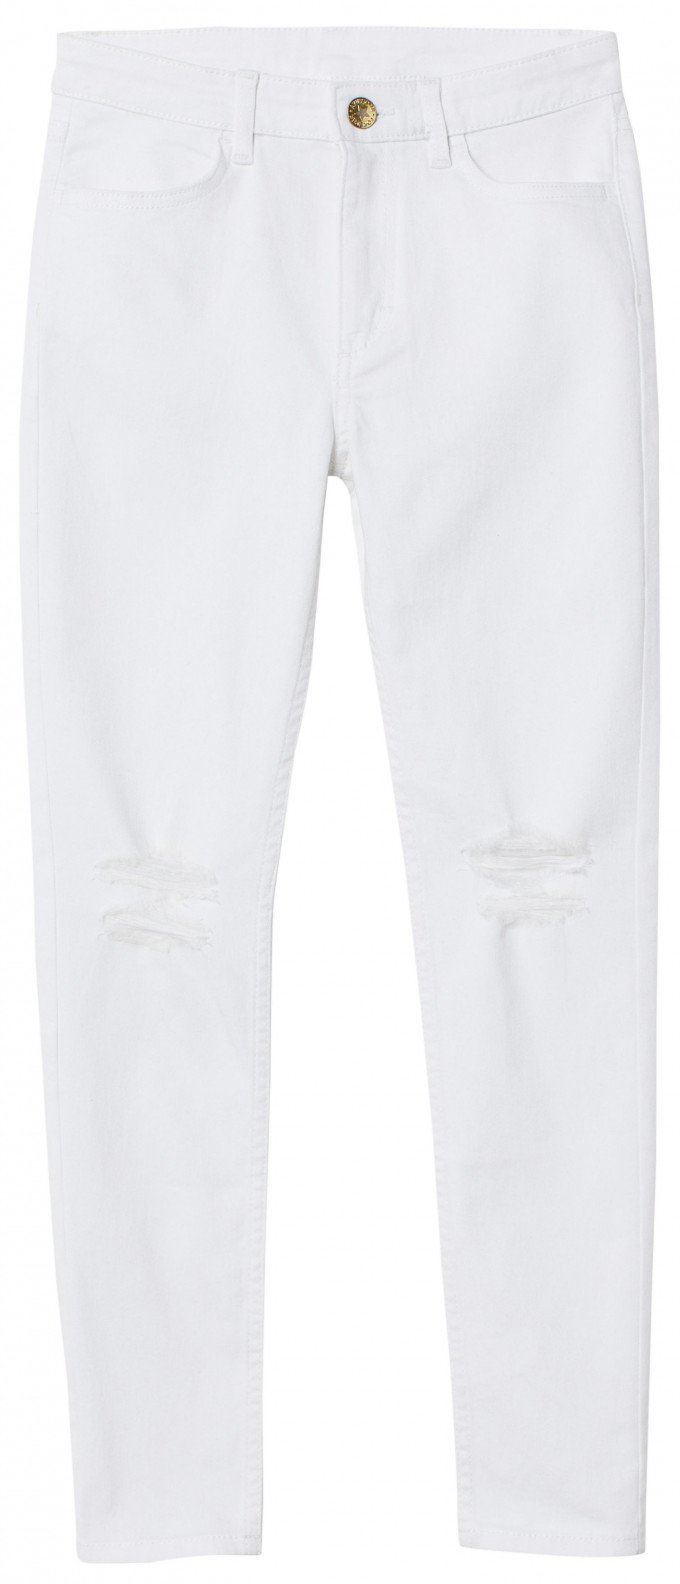 Фото - модные белые джинсы для девочки цена 415 грн. за штуку - Леопольд